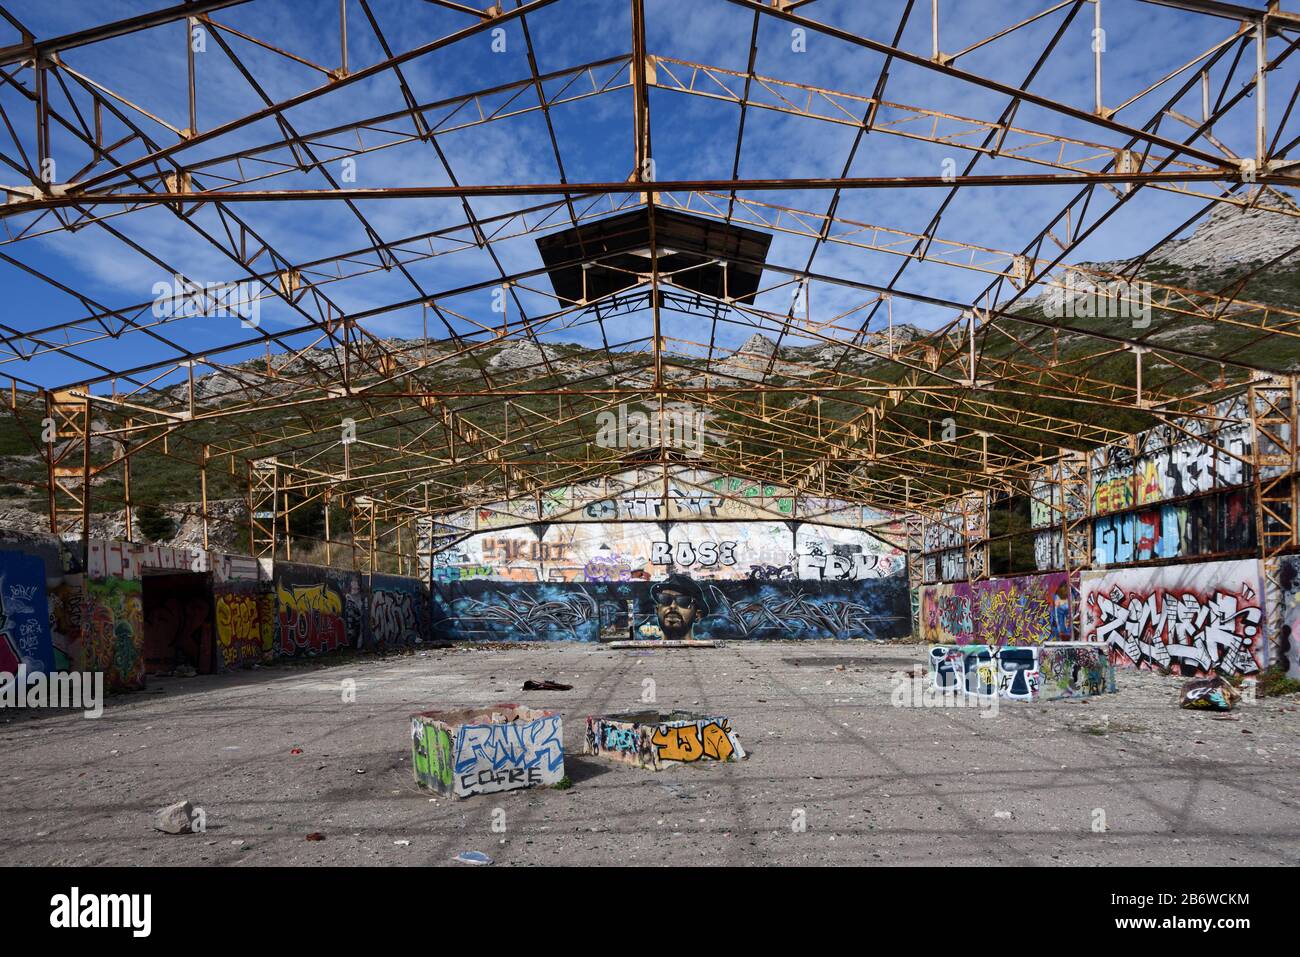 Leerstehende und Verlassene Fabrik, Ruiniertes Industriegebäude oder industrielles Wasteland, bedeckt in Graffiti Marseille Provence Frankreich Stockfoto